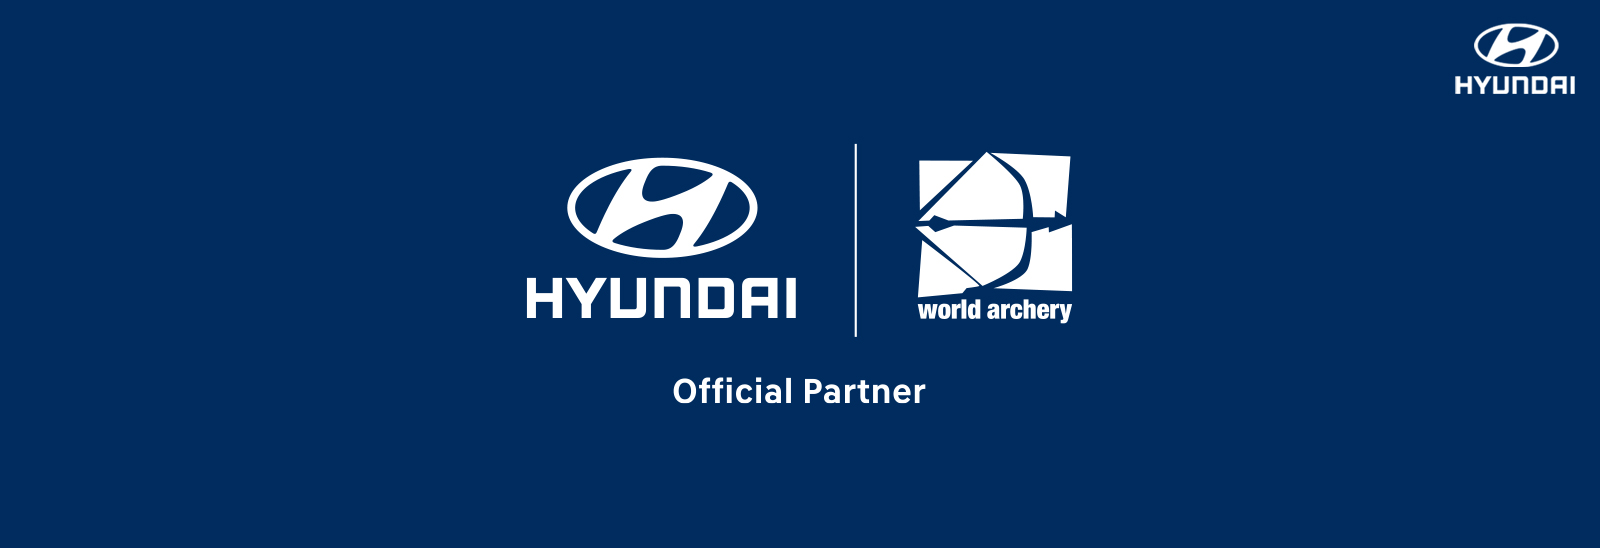 Hyundai patrocinador oficial del mundial de arquería